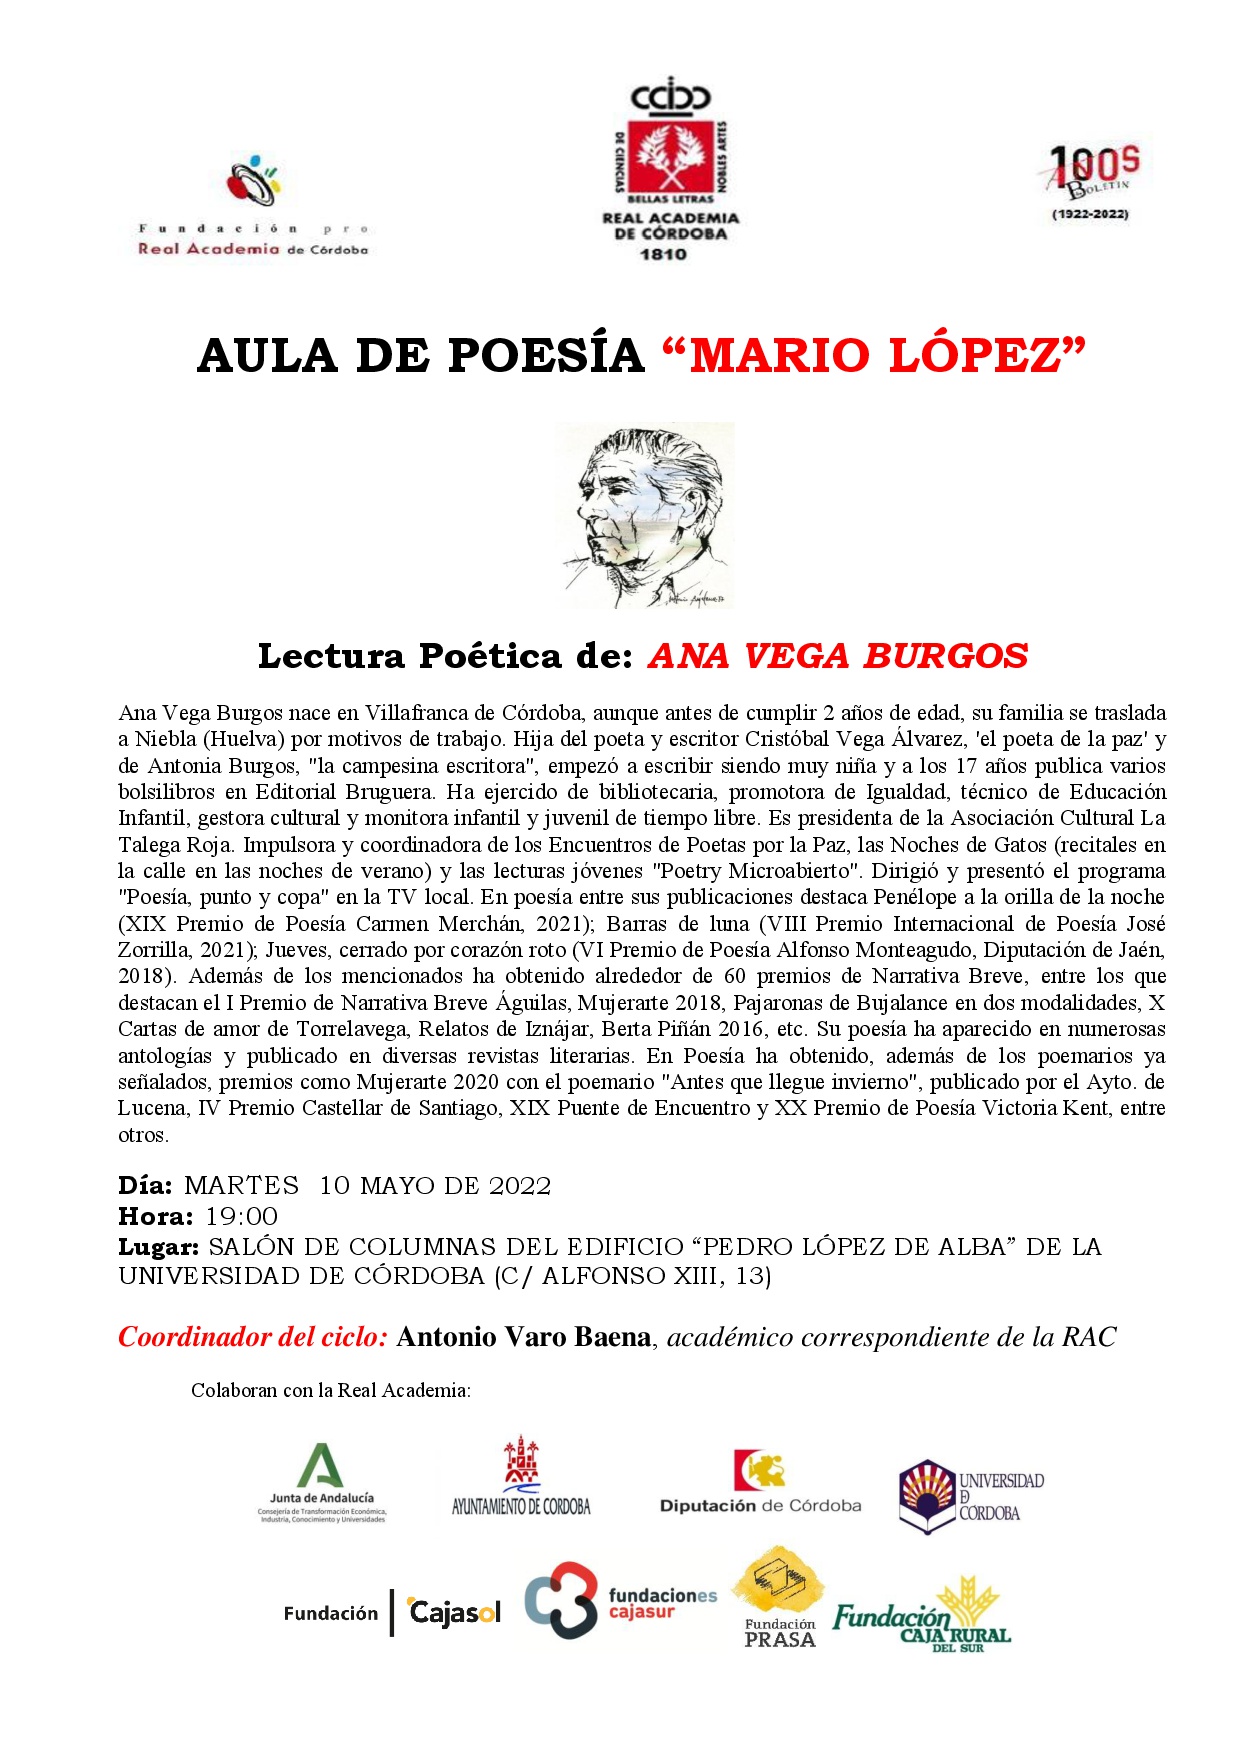 Aula de poesía "Mario López". Lectura poética de: Ana Vega Burgos